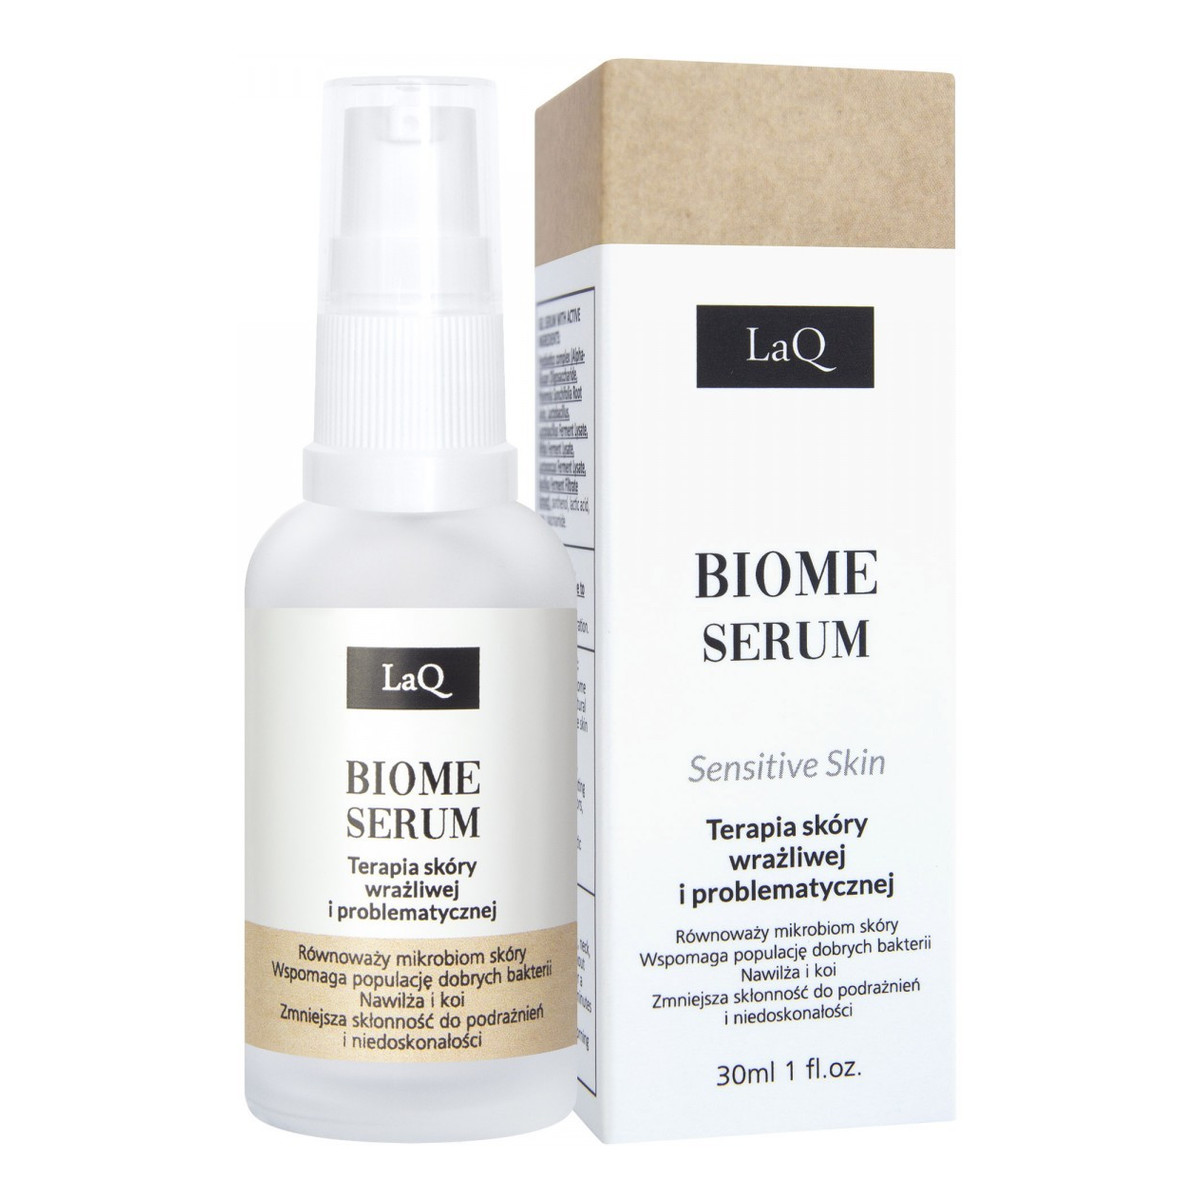 Laq Biome Serum Terapia skóry wrażliwej i problematycznej Sensitive Skin 30ml